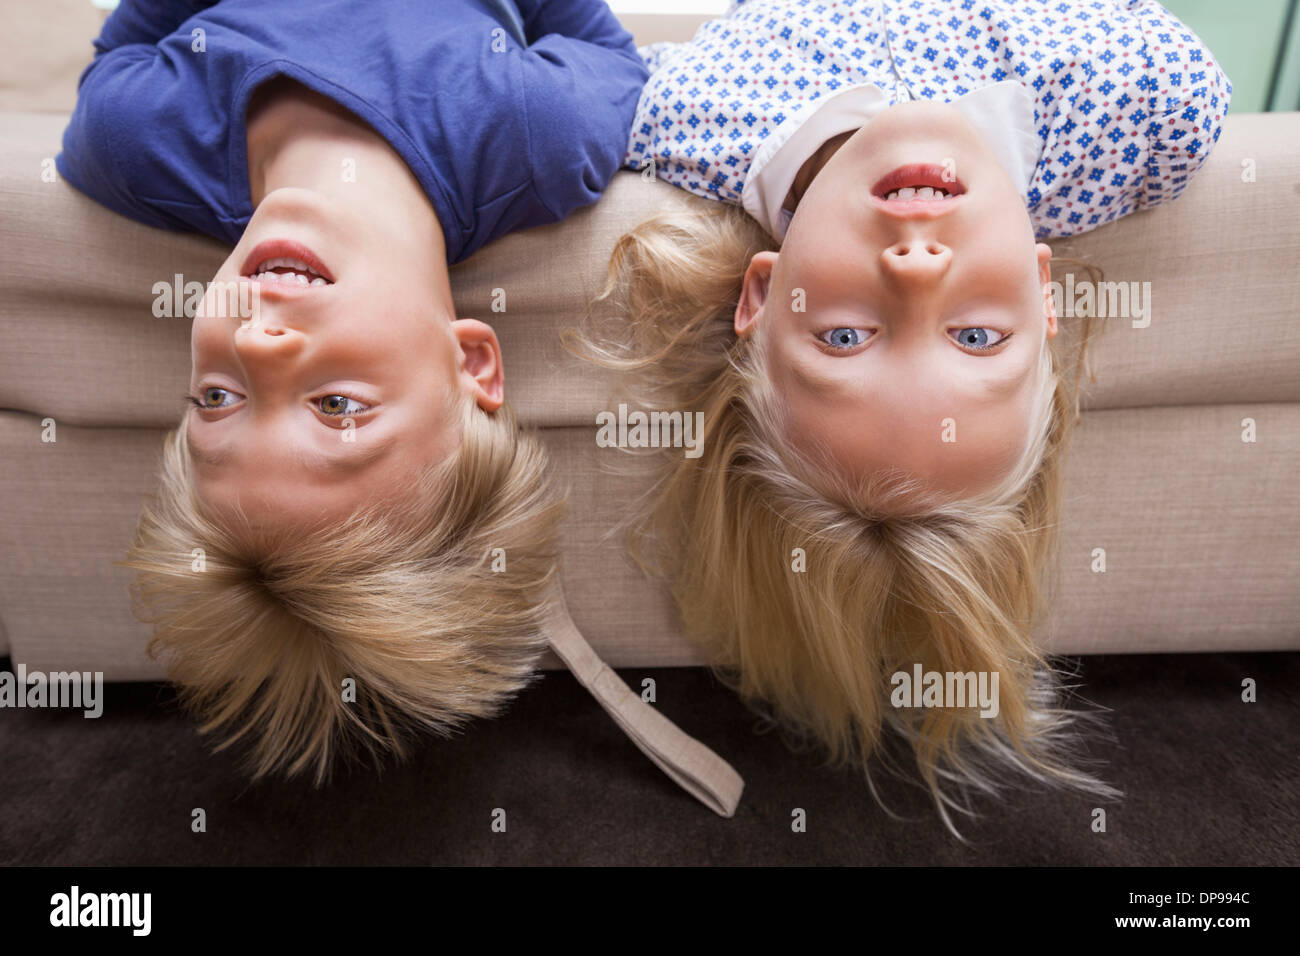 Porträt eines Mädchens mit Bruder auf Sofa Bett liegend Stockfoto